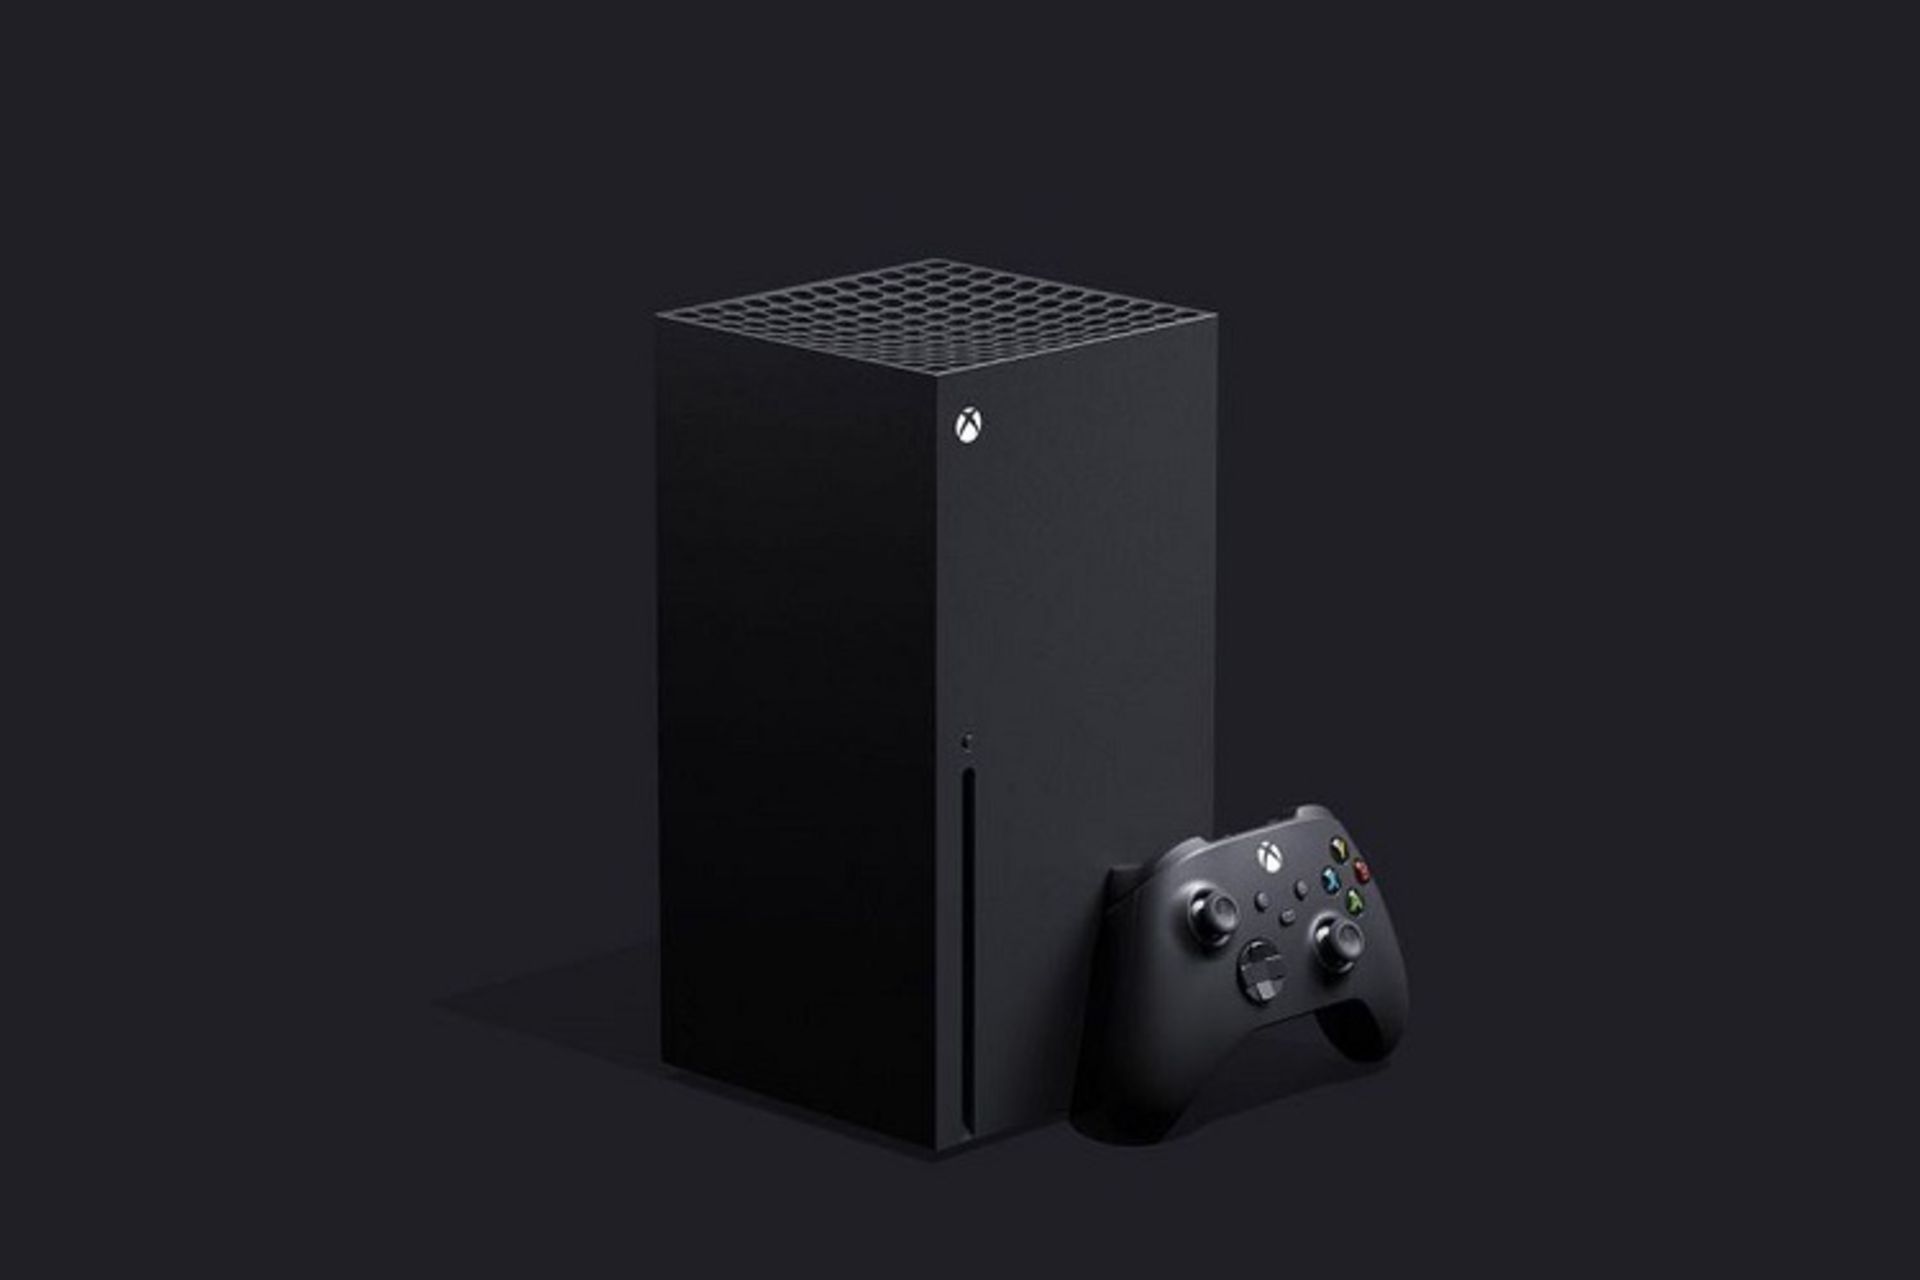 ایکس باکس سری ایکس مایکروسافت / Microsoft Xbox Series X